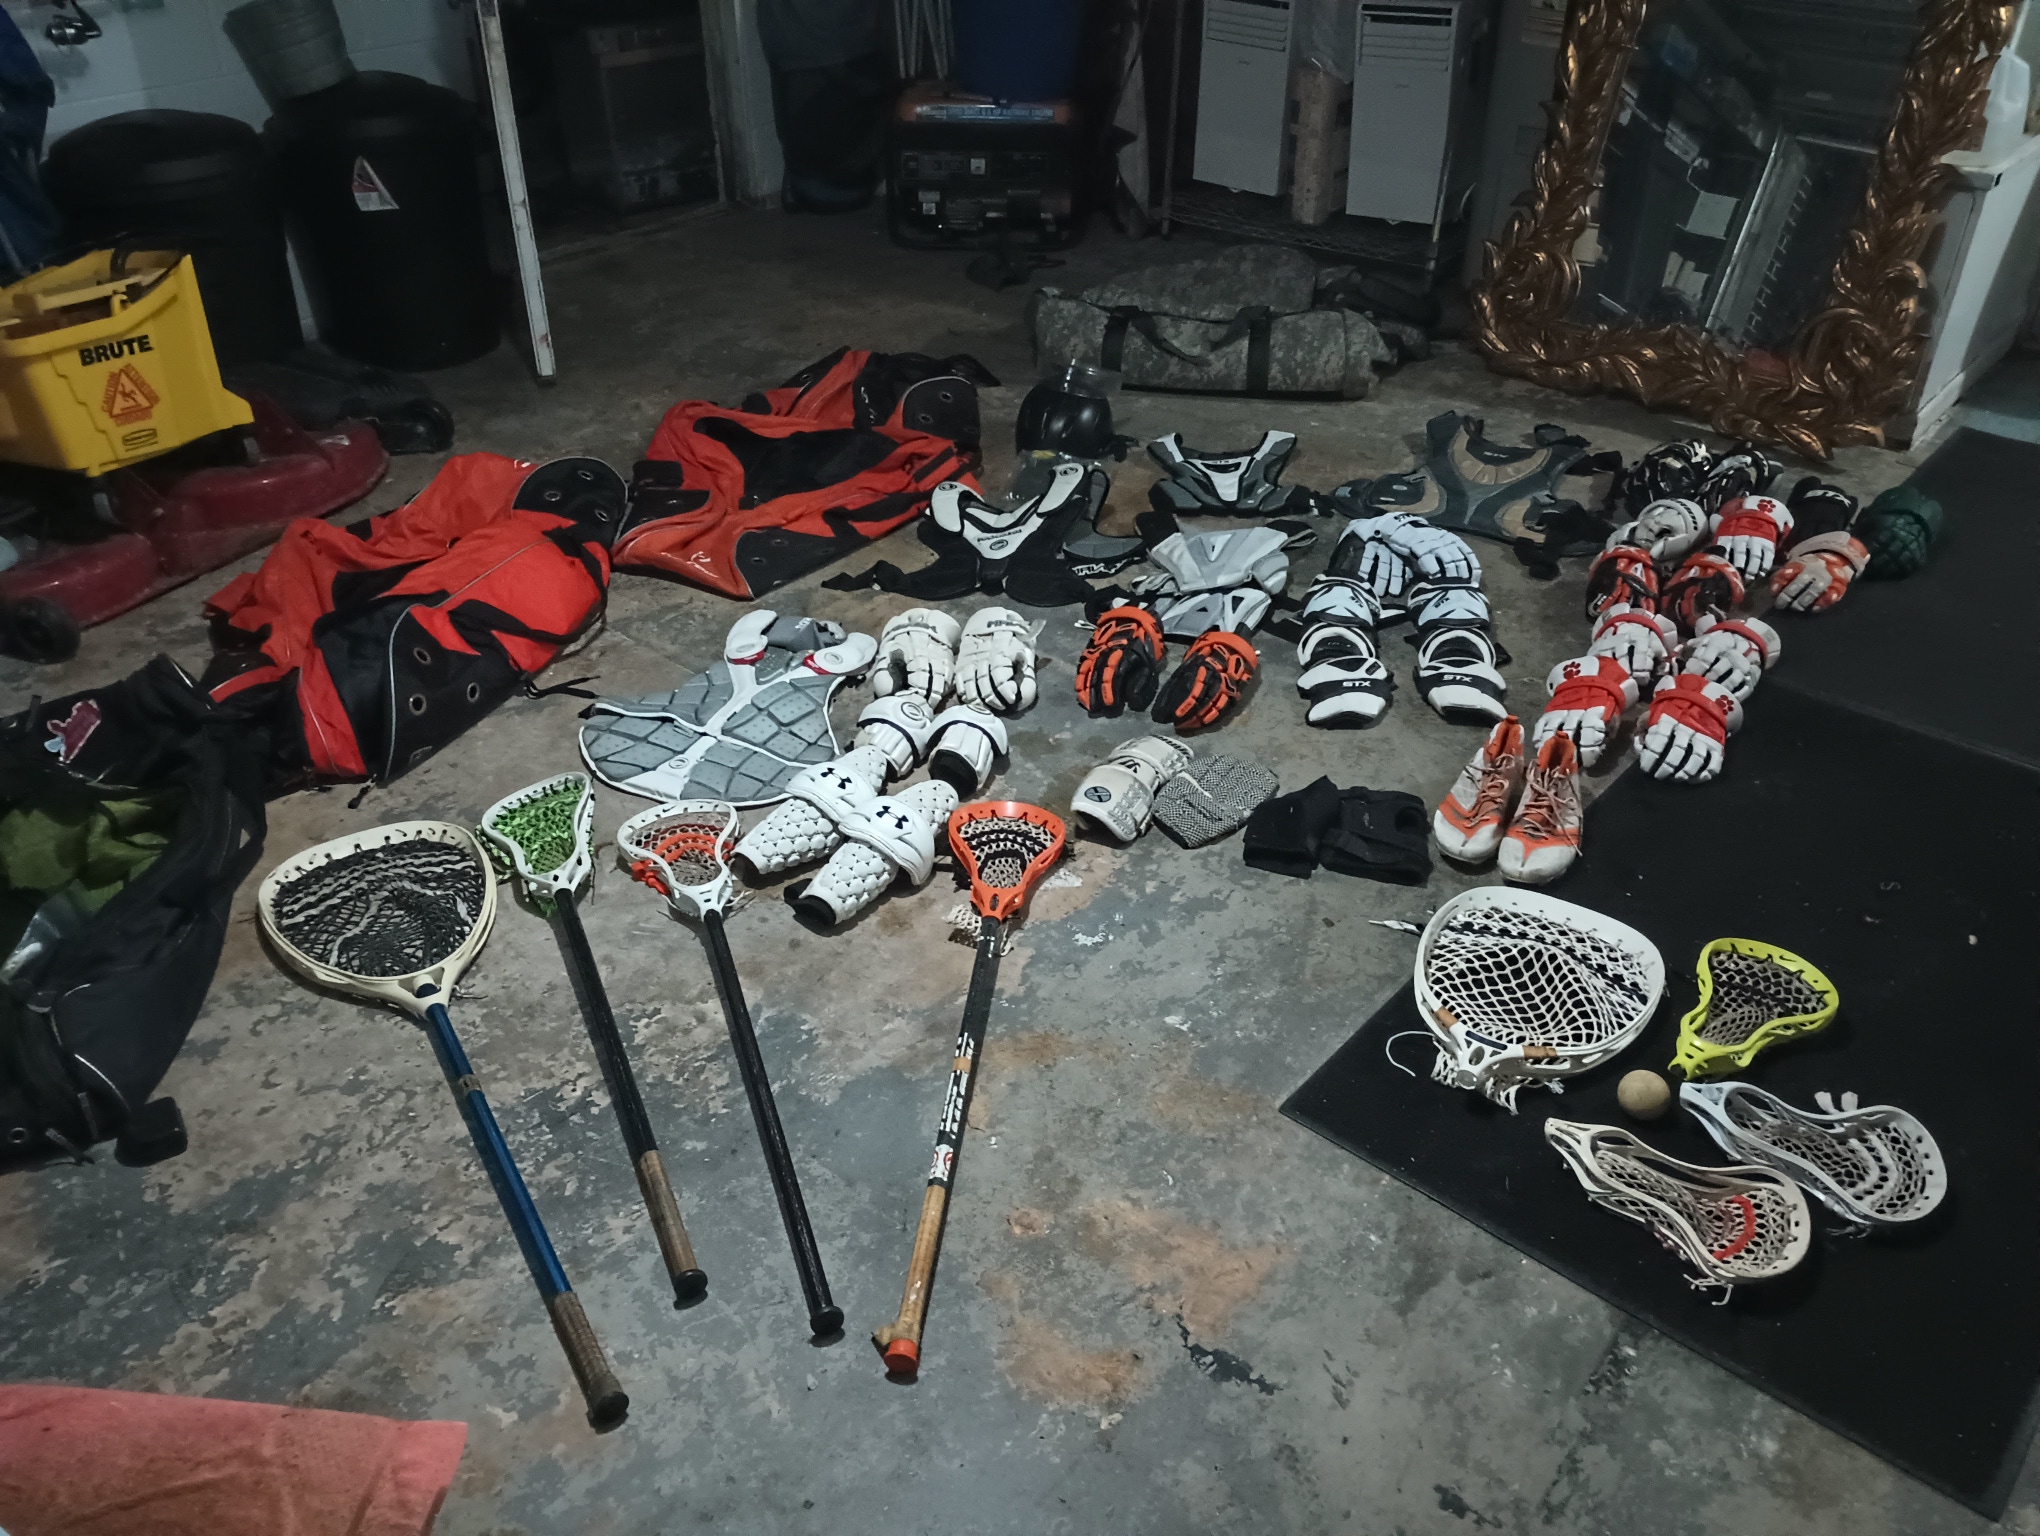 STX & Nike lacrosse gear